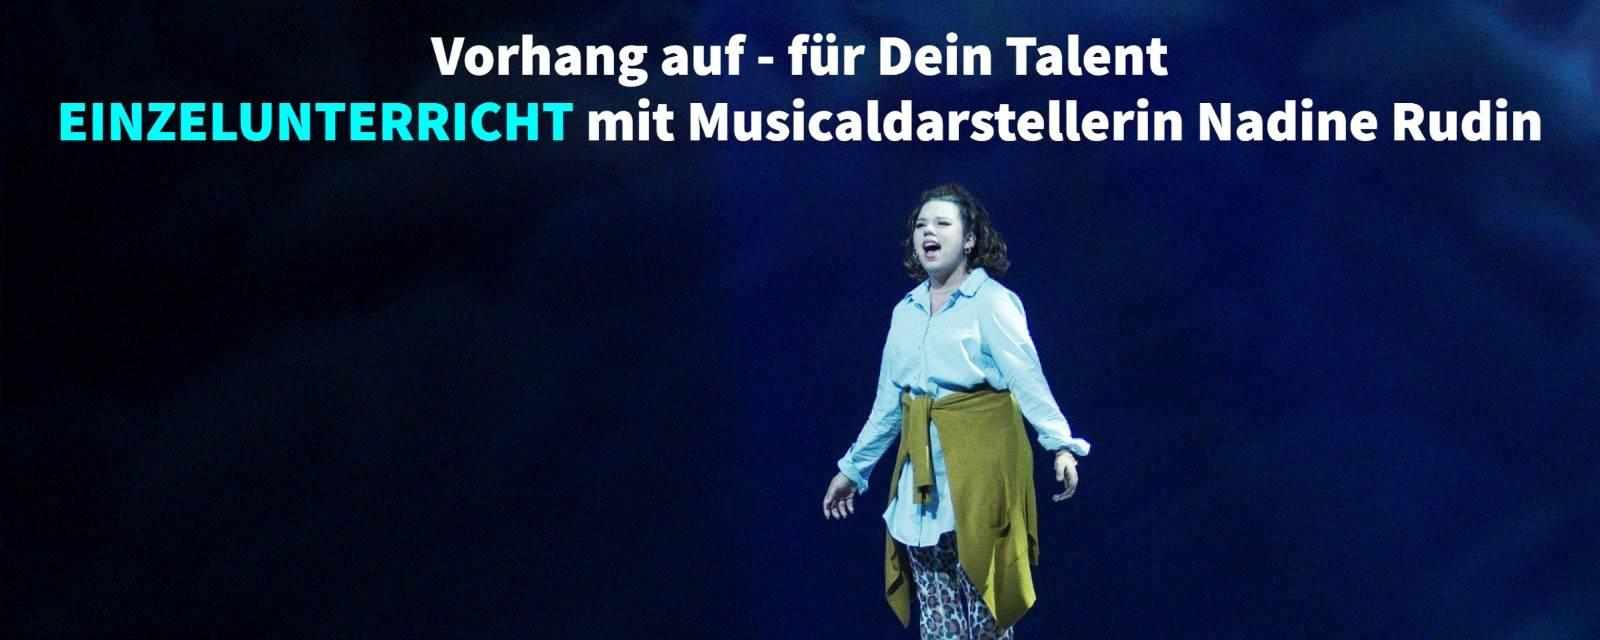 Gesang mit Musical-Profi in Aarau